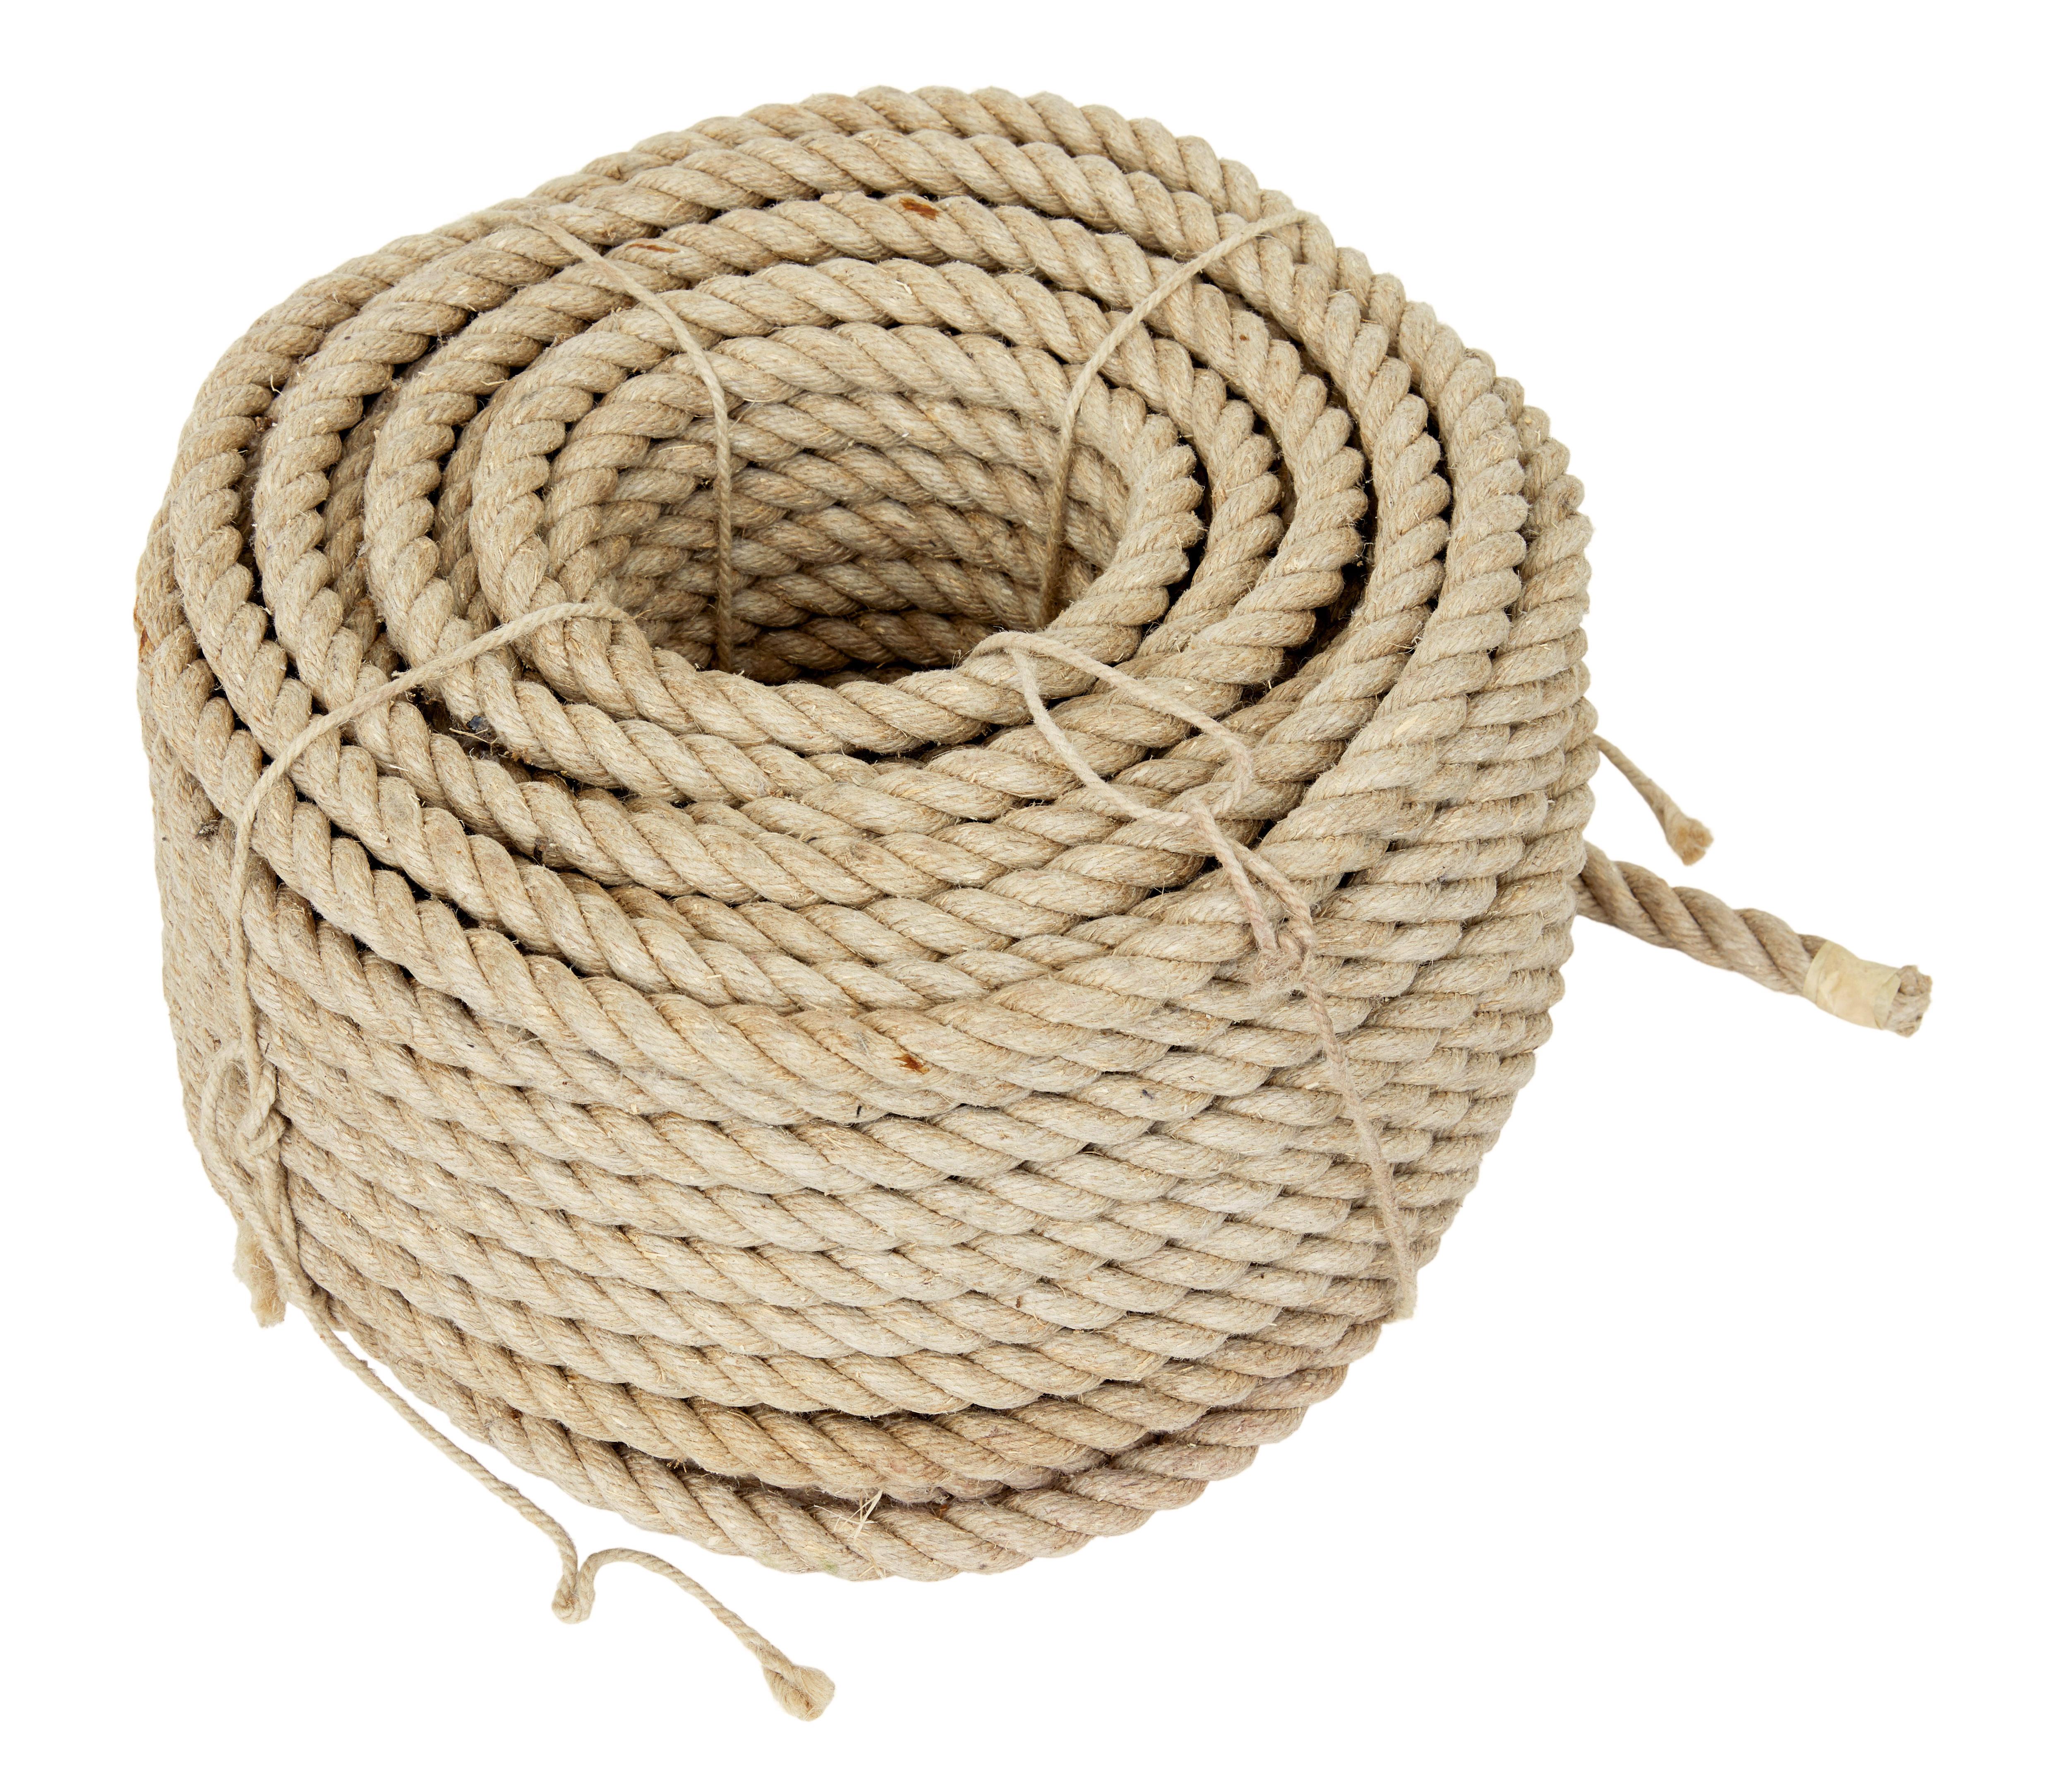 Mid 20th century unused bundle of rope circa 1950.

Here we have an unused bundle of 3/4